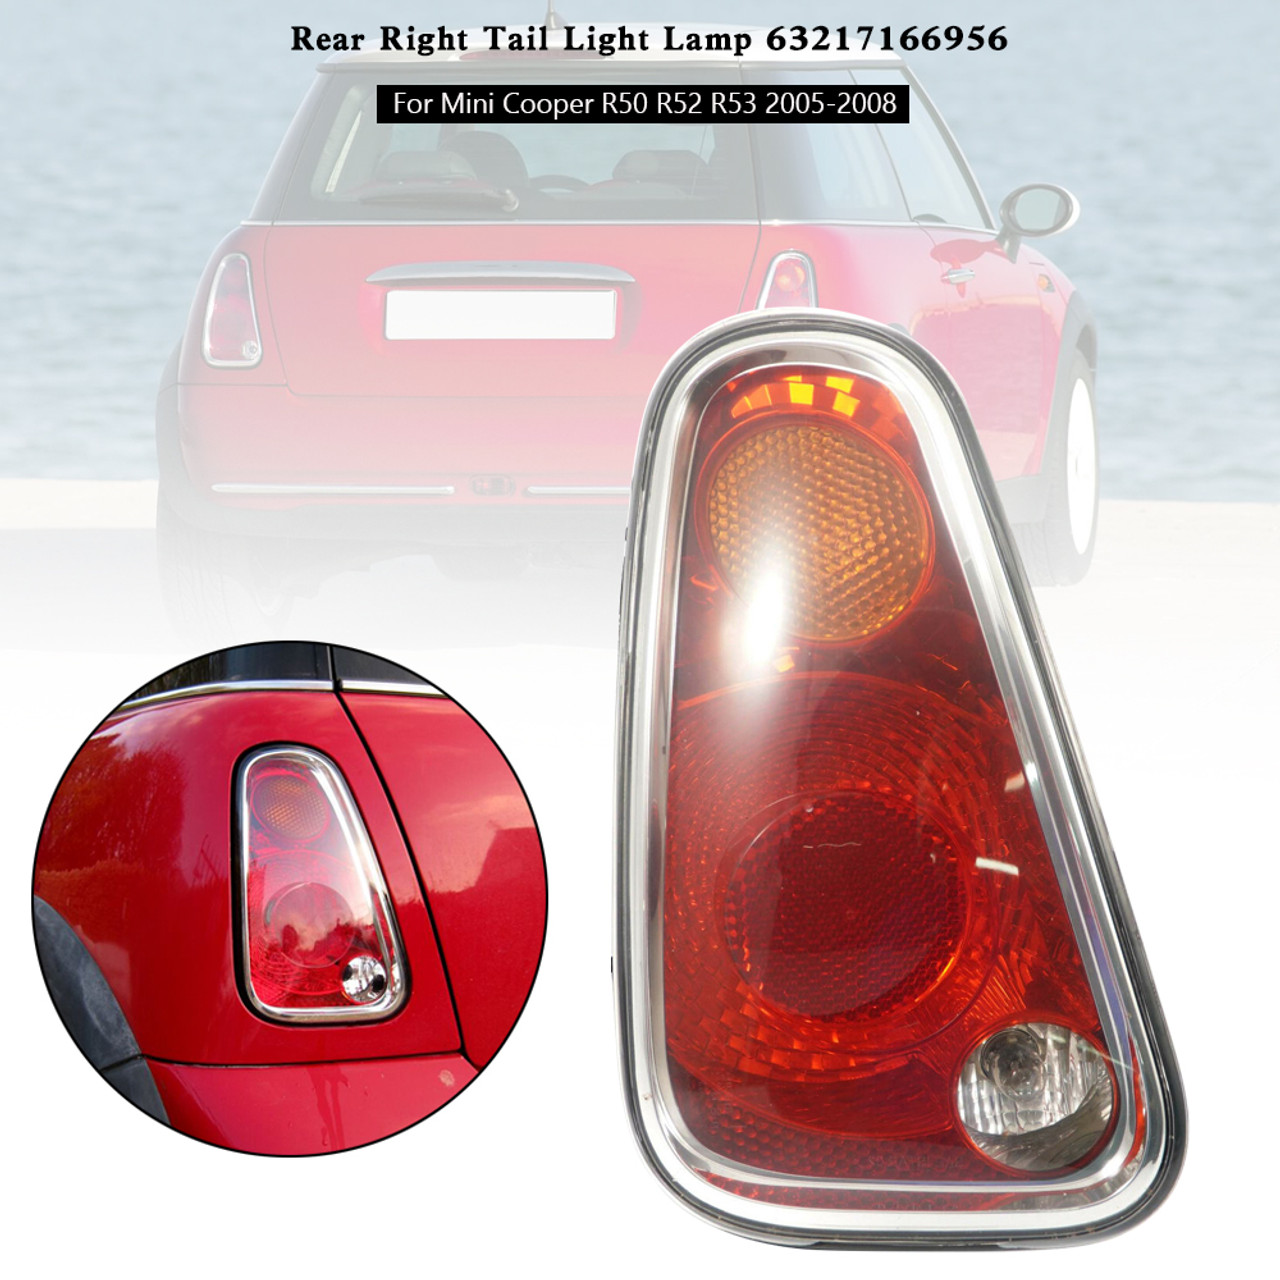 Rear Left Tail Light Lamp 63217166955 For Mini Cooper R50 R52 R53 2005-2008